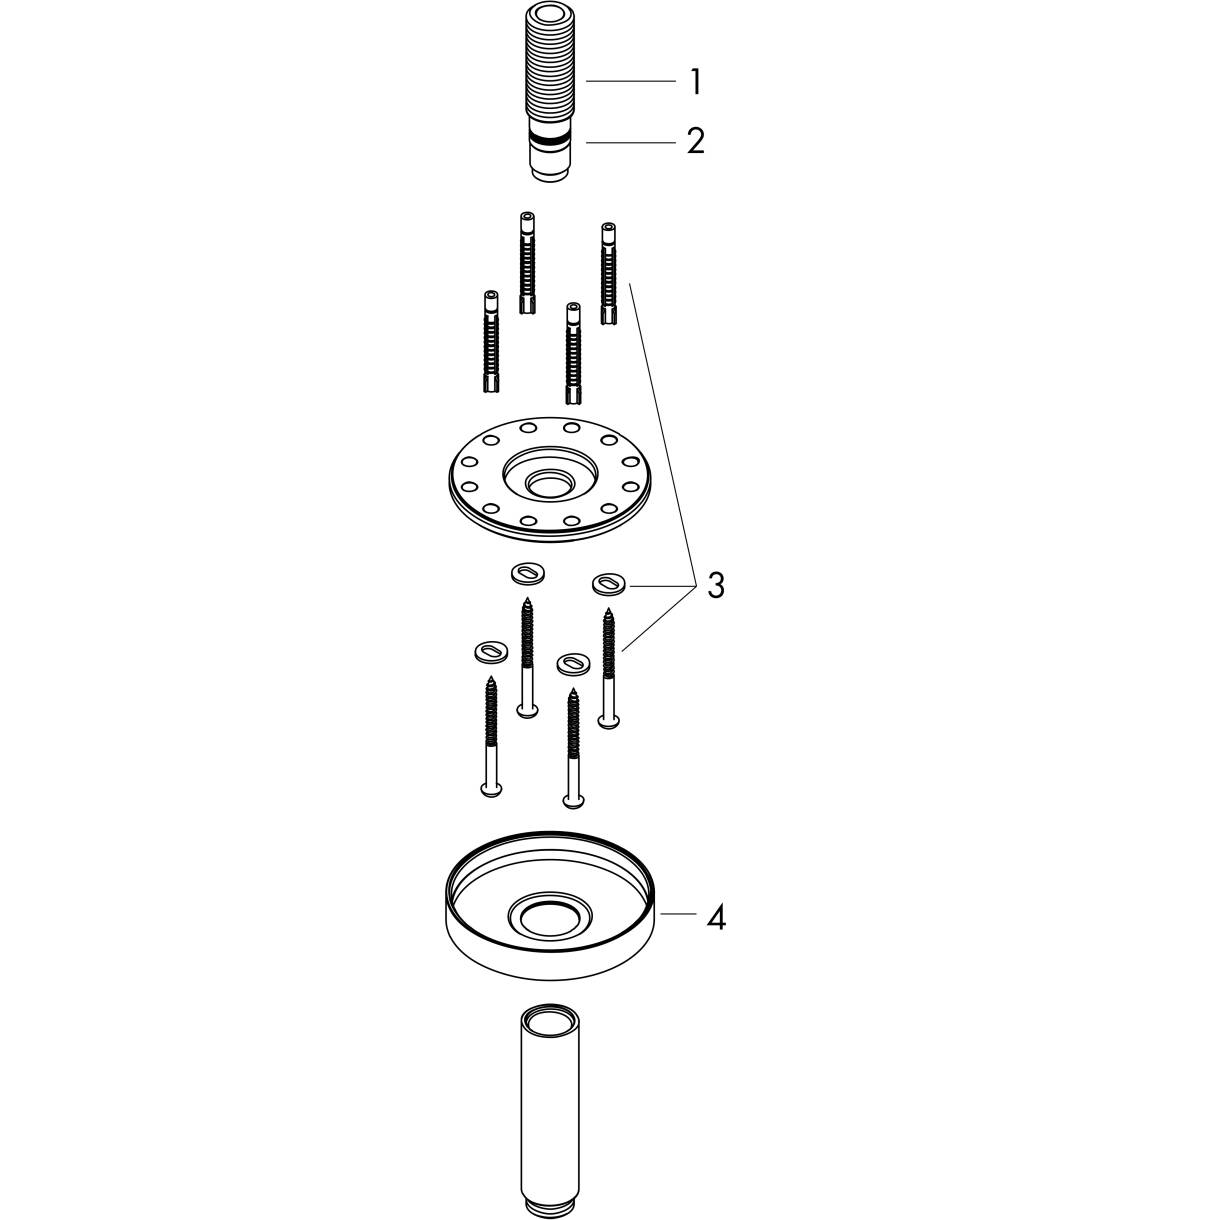 Bild von HANSGROHE AXOR ShowerSolutions Deckenanschluss 300 mm #26433820 - Brushed Nickel